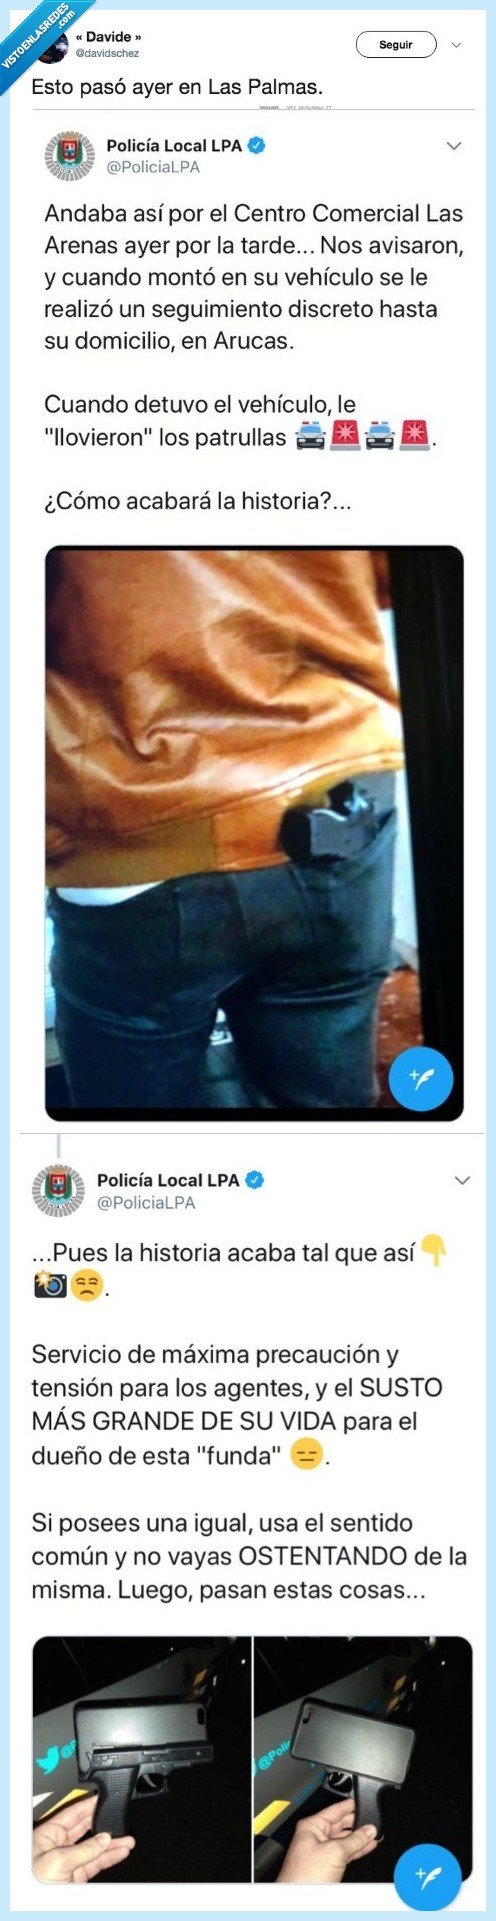 488655 - La poli de Las Palmas desplega un gran dispositivo policial y mete una tremenda cagada